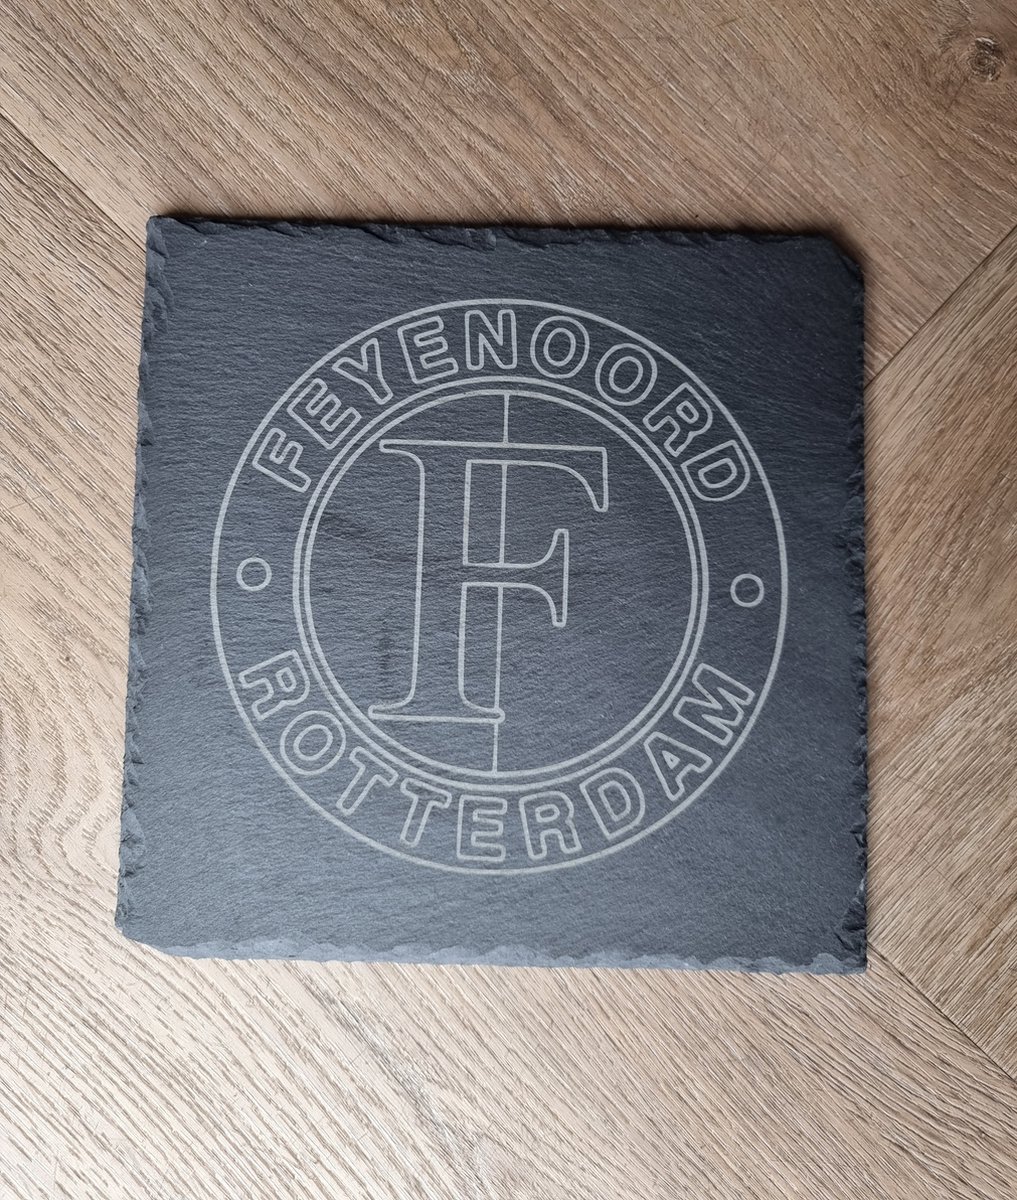 Leistenen plank Feyenoord vierkant 20cm - Serveerplank - Tapasplank - Decoratie - Onderzetter - Borrelplank - Leisteen